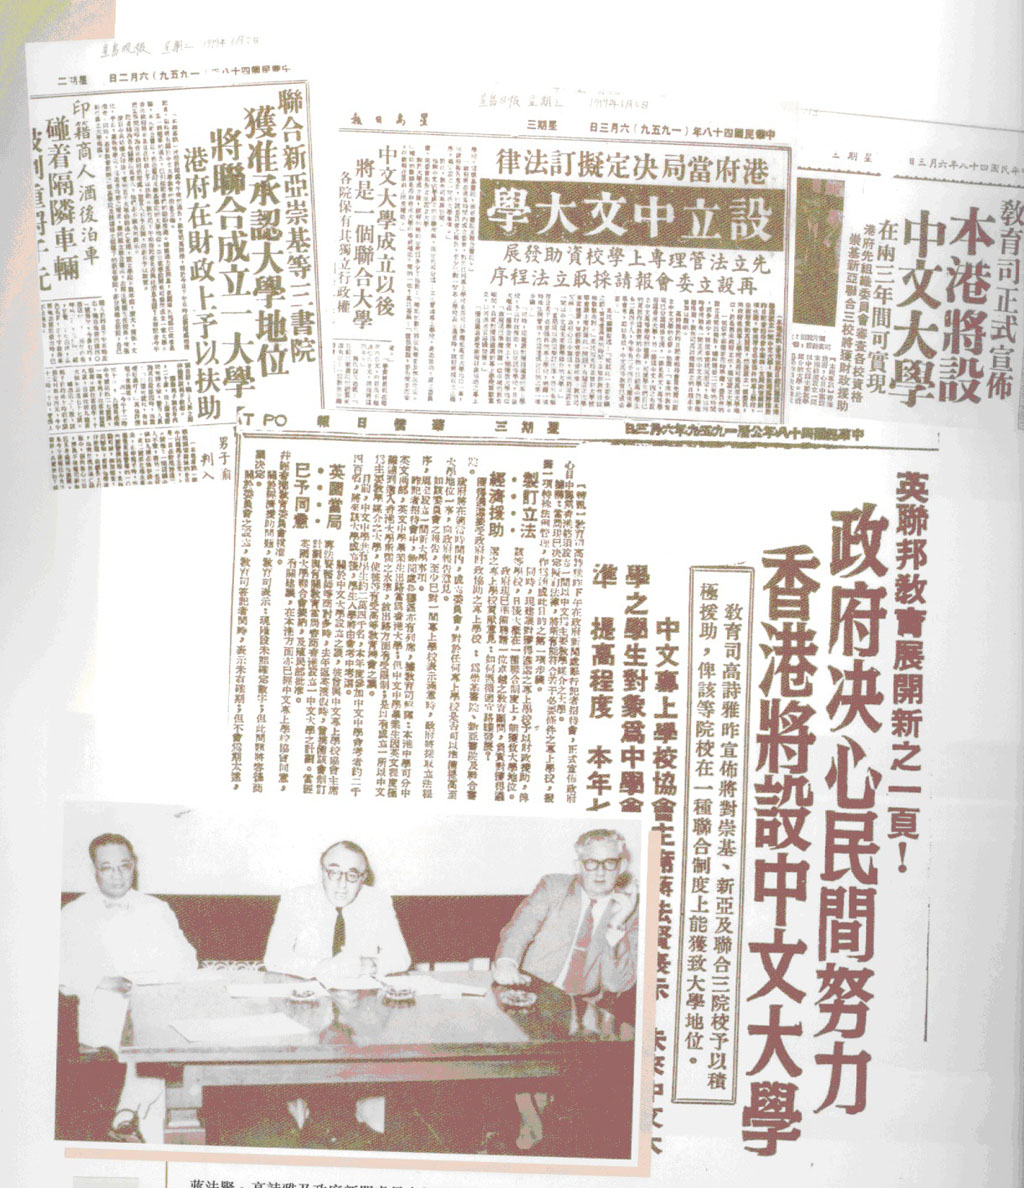 三院聯合成為大學剪報(1959.6)